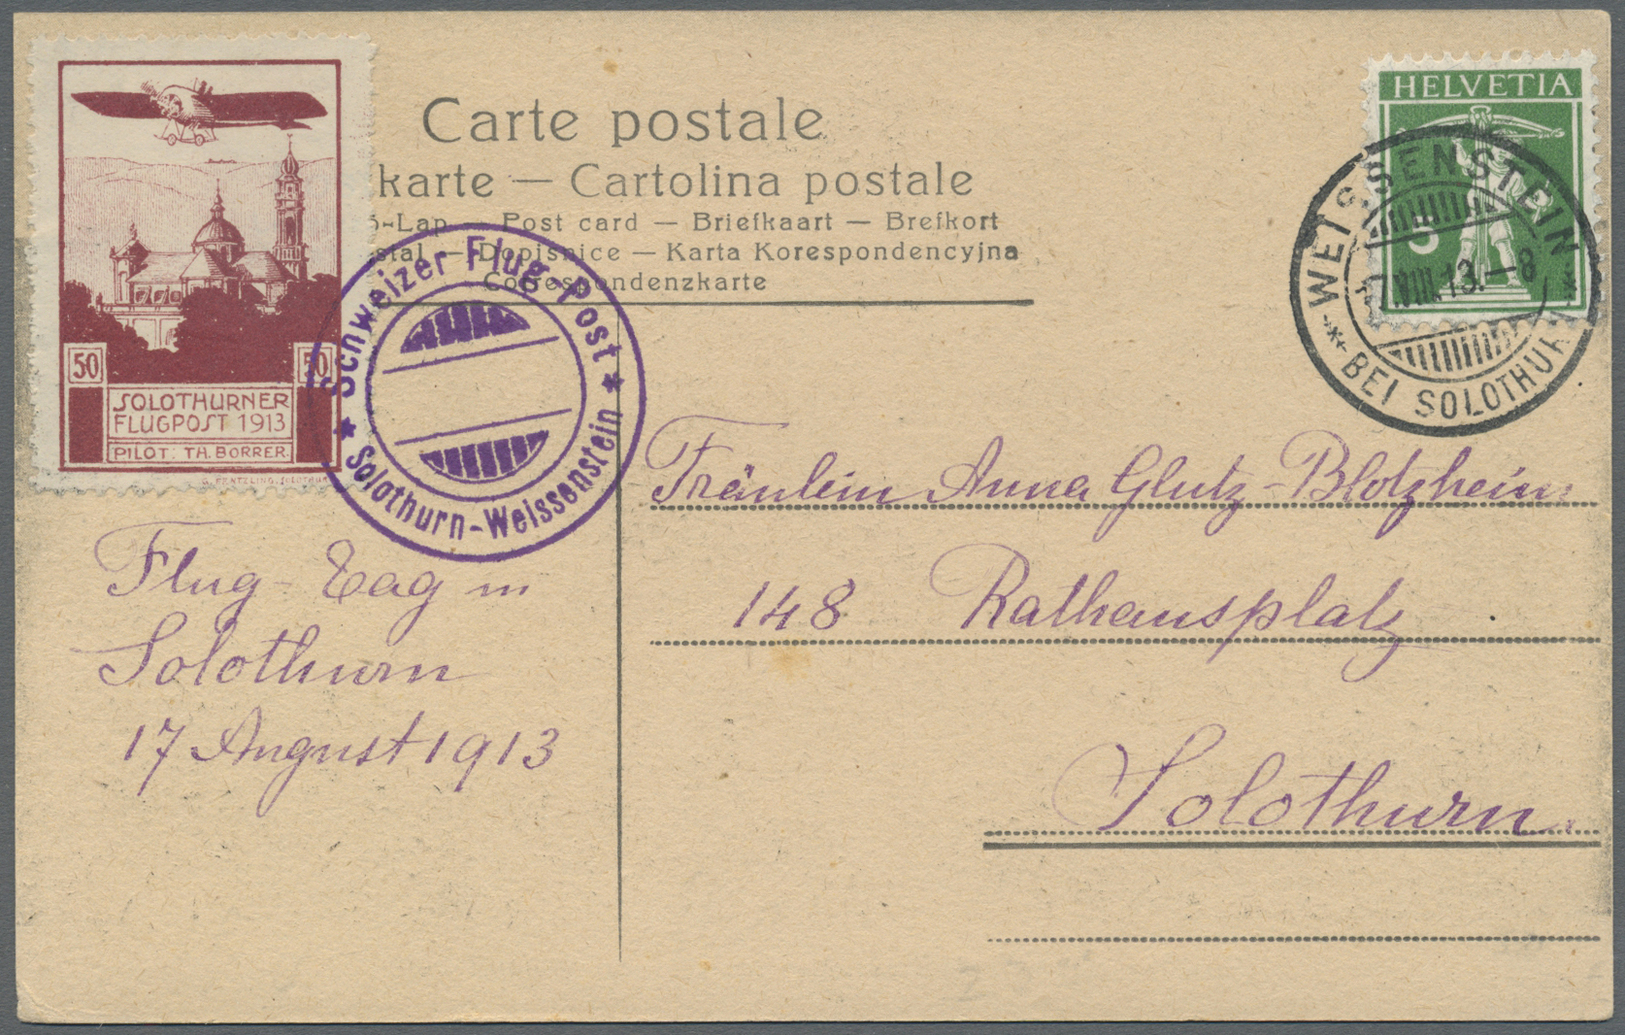 Br Schweiz - Halbamtliche Flugmarken: 1913 SOLOTHURN 50 C. Zusammen Mit Tell 5 C. Auf Offizieller Karte, Sonderfl - Used Stamps